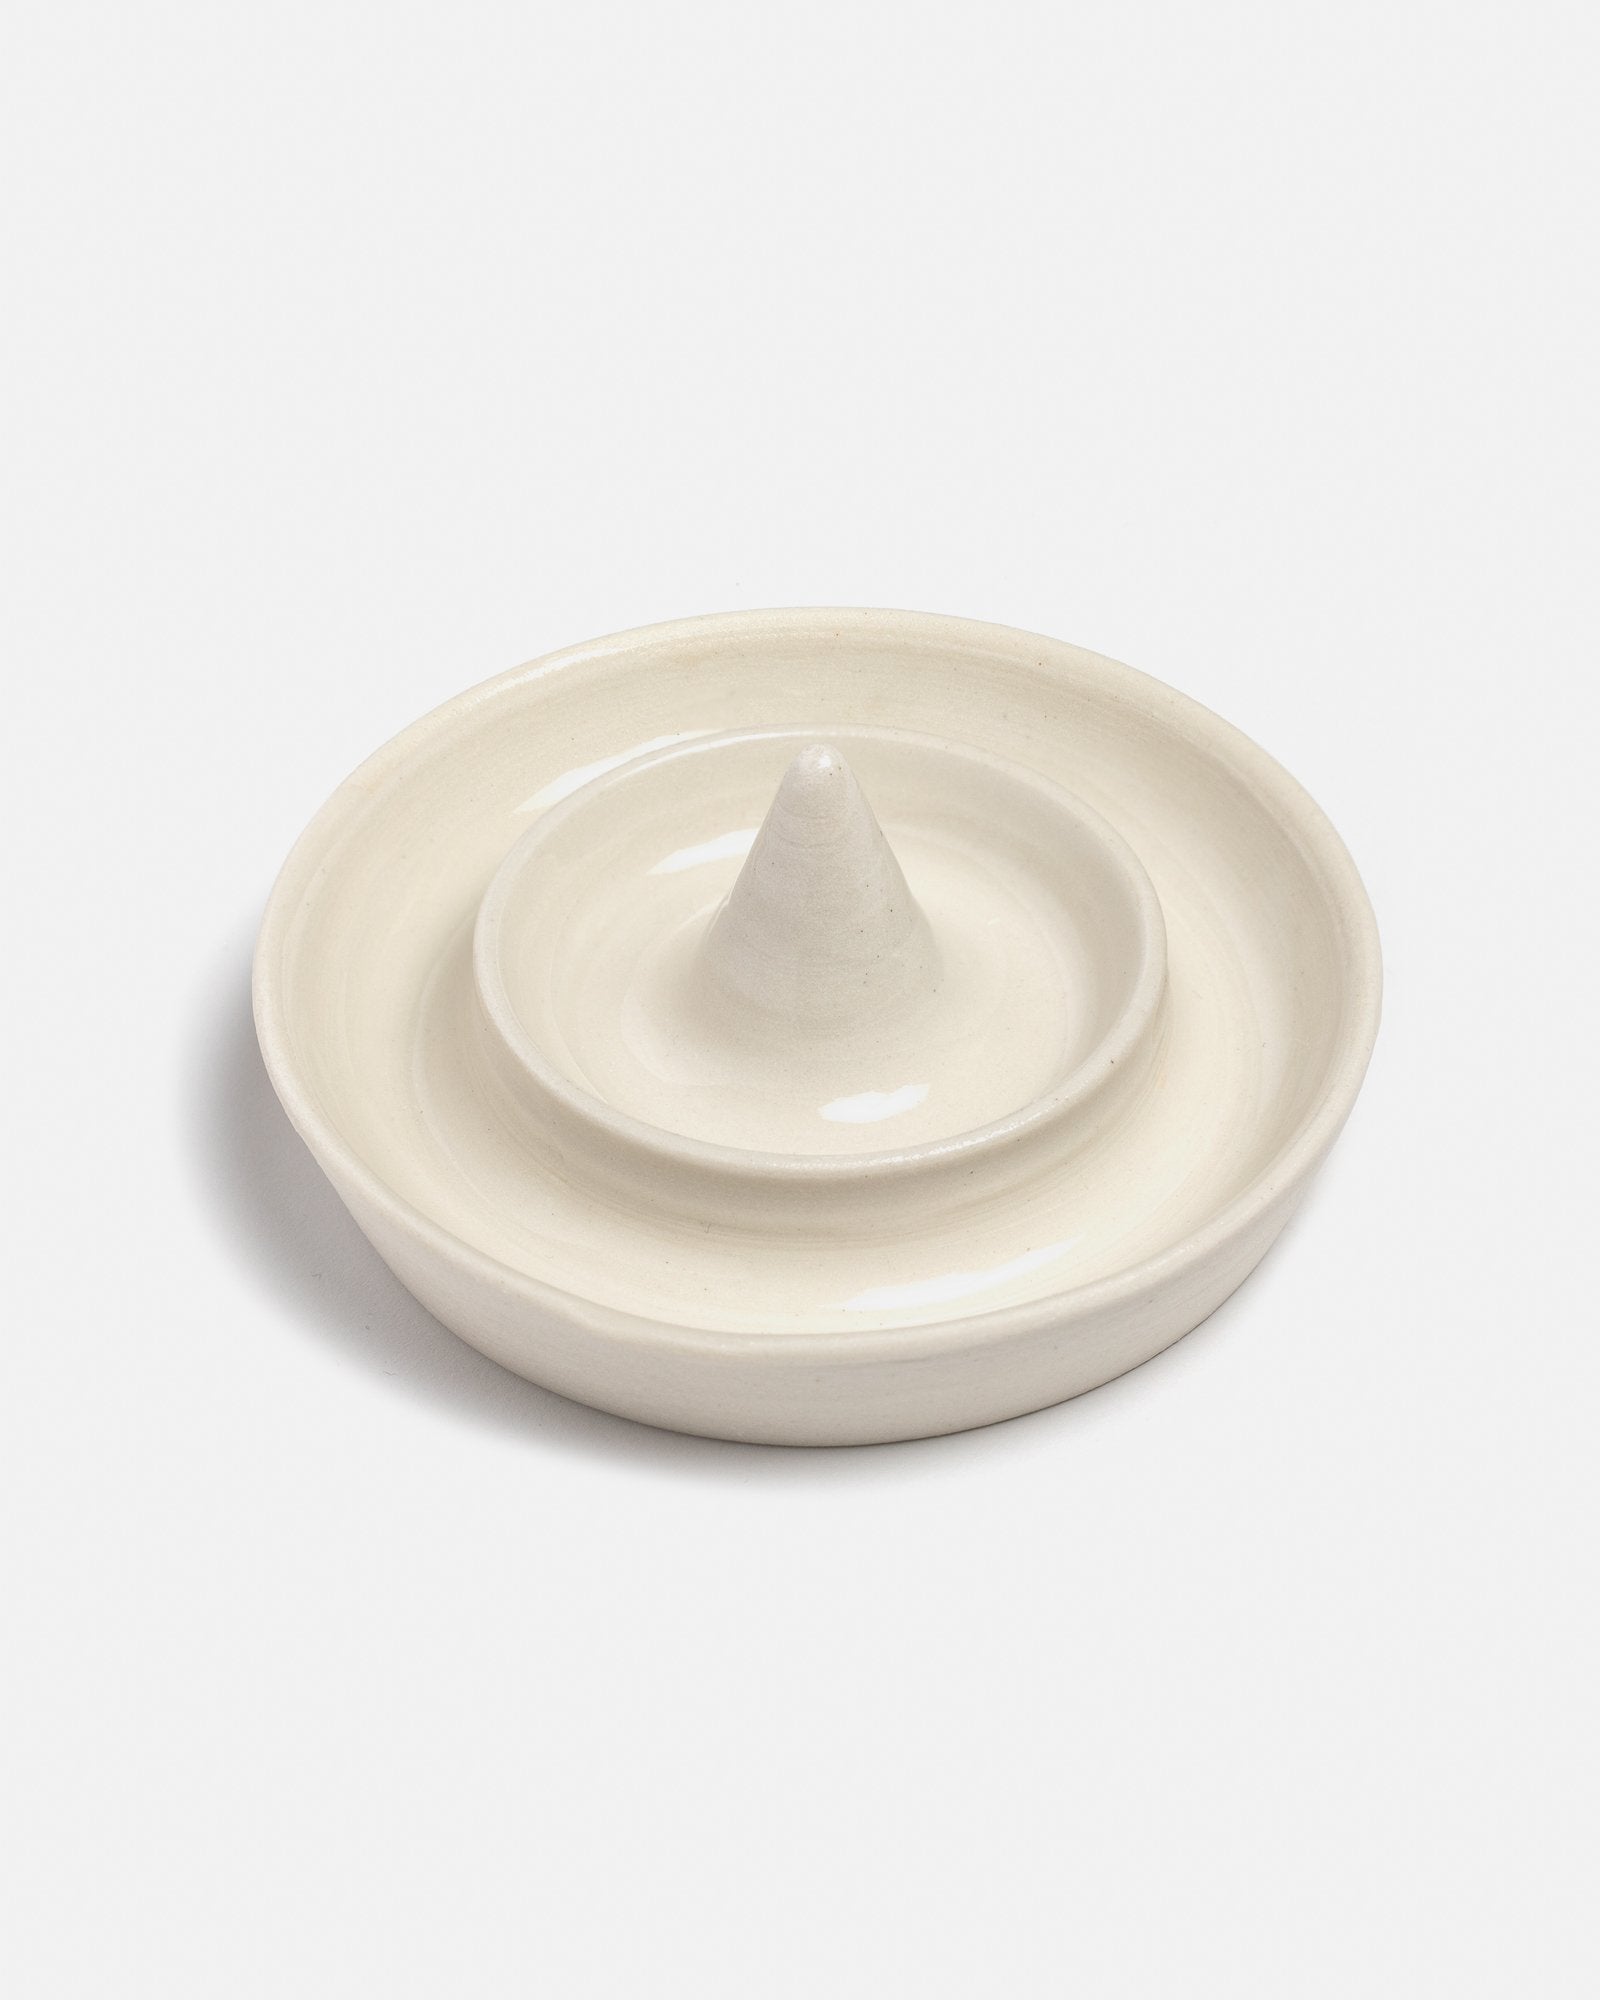 MYEL x AMK Ceramic Ring Display in White